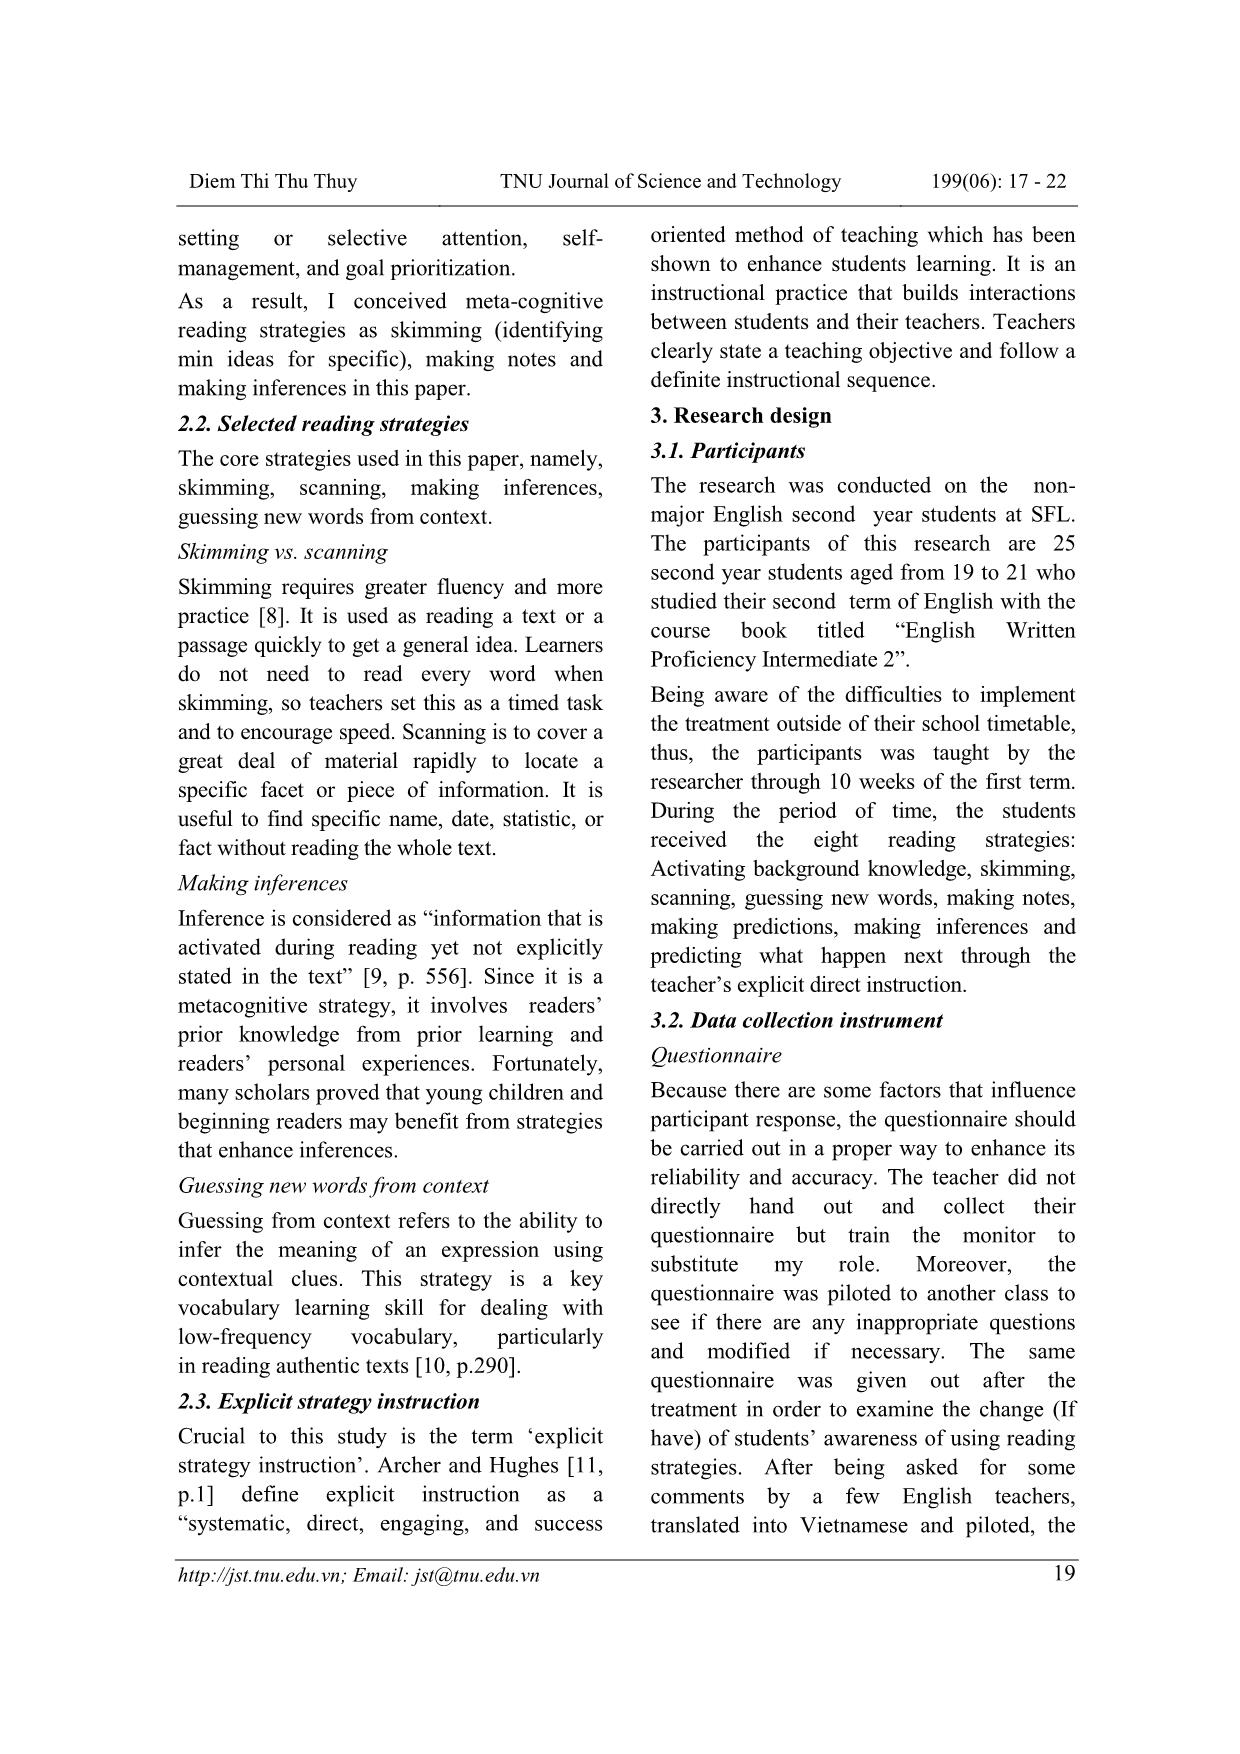 Ảnh hưởng của lời dẫn tường minh cho các chiến lược đọc đến kỹ năng đọc hiểu tại khoa Ngoại ngữ, Đại học Thái Nguyên trang 3